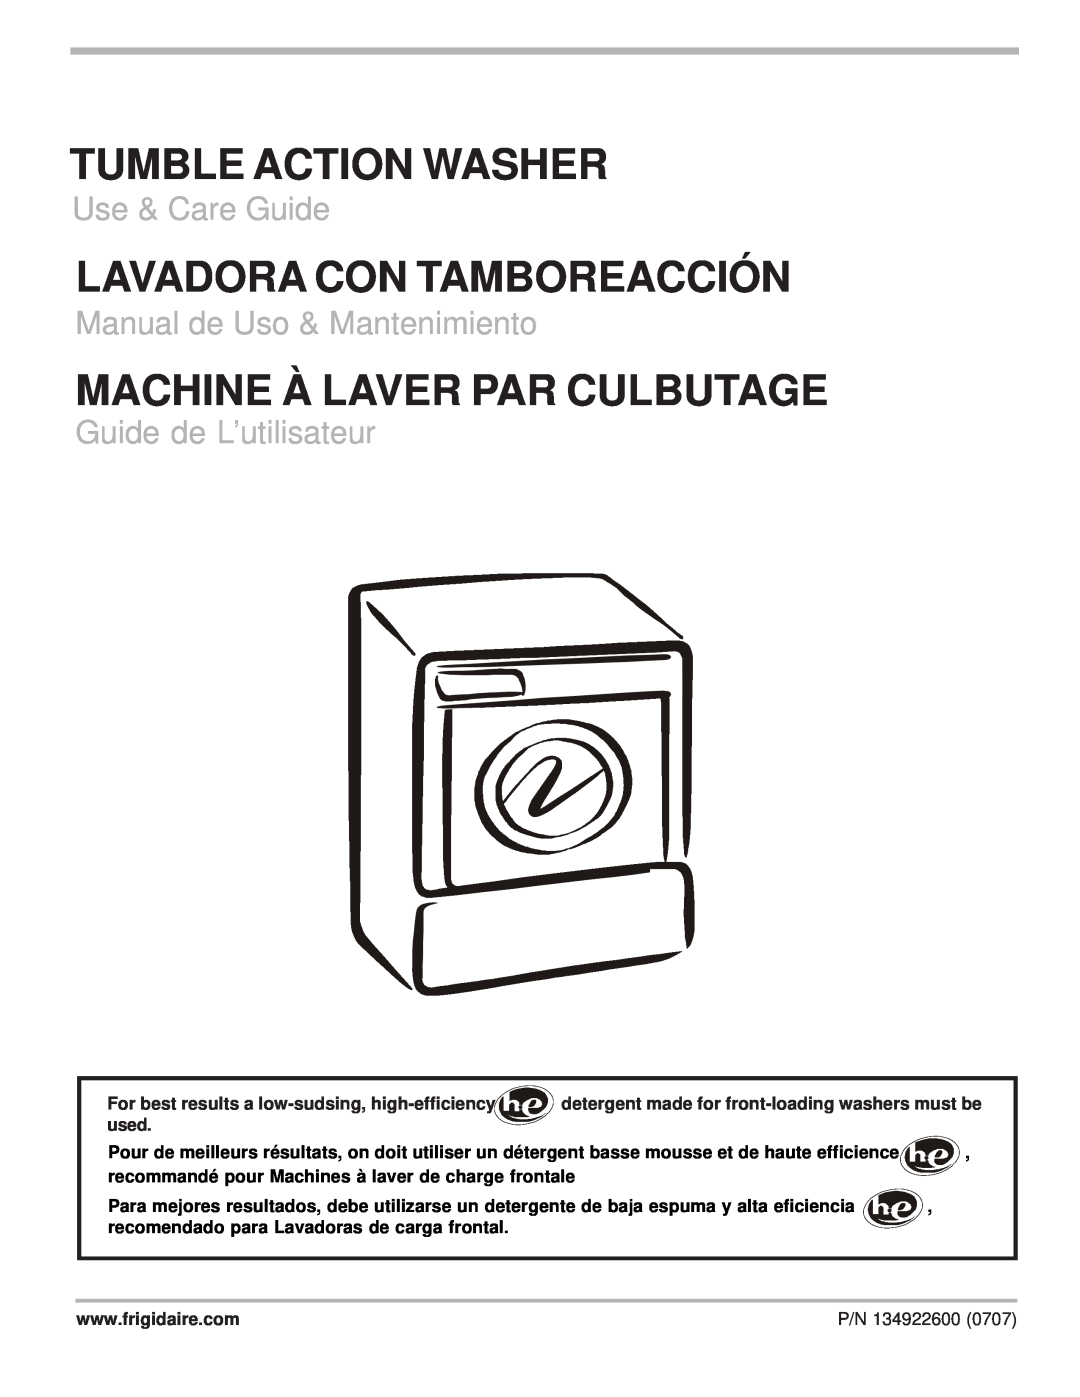 Frigidaire 134922600 manual English English, Tumble Action Washer, Lavadora Con Tamboreacción, Use & Care Guide 